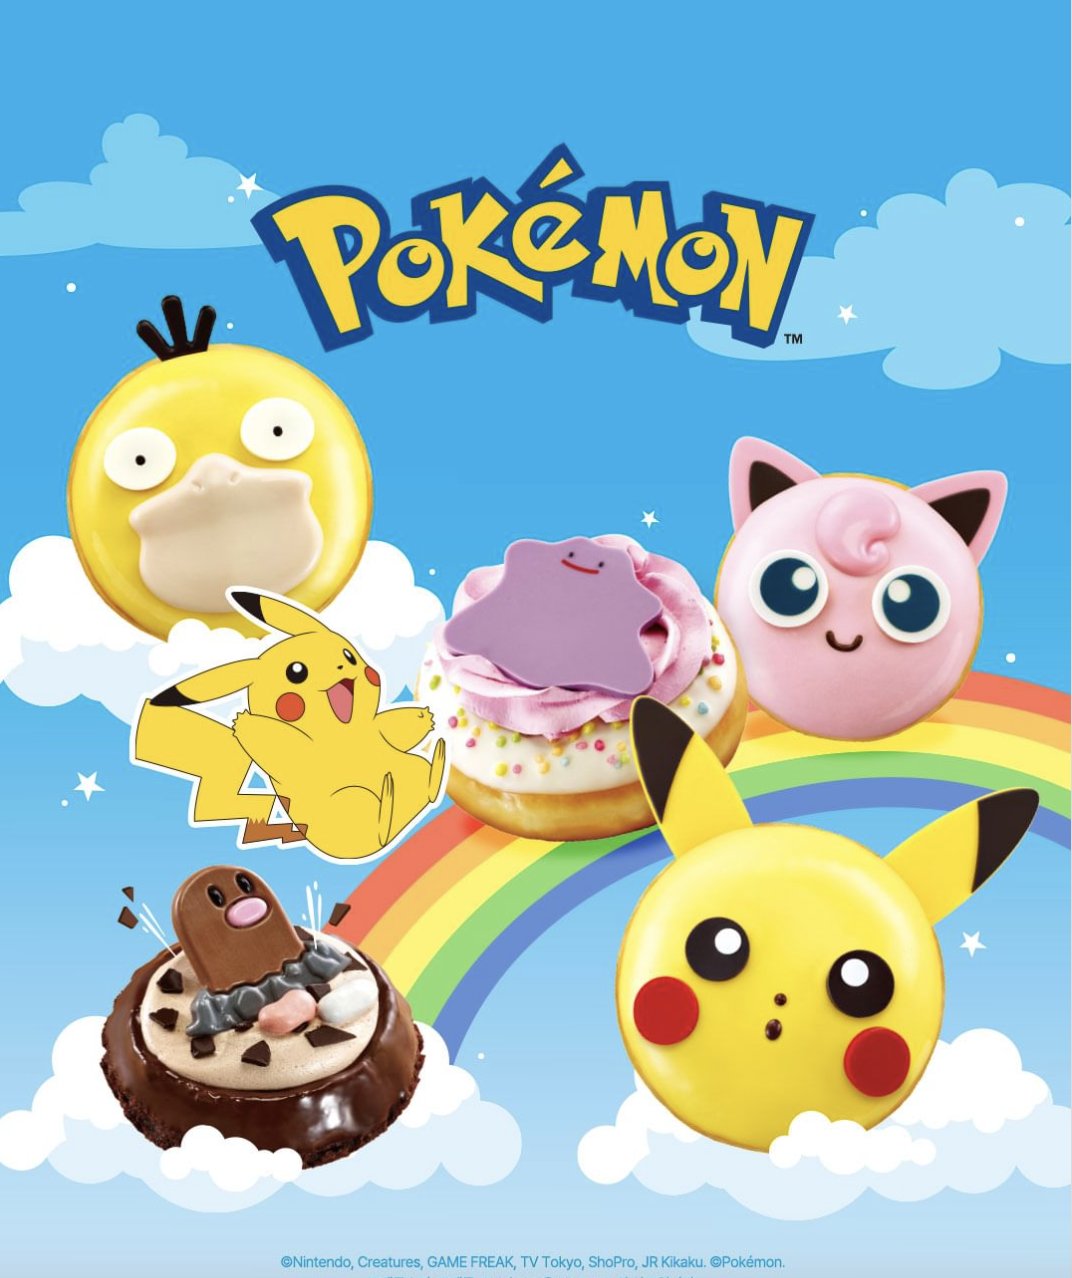 Pokémon x Krispy Kreme: Conoce los detalles de esta adorable y deliciosa colaboración 12